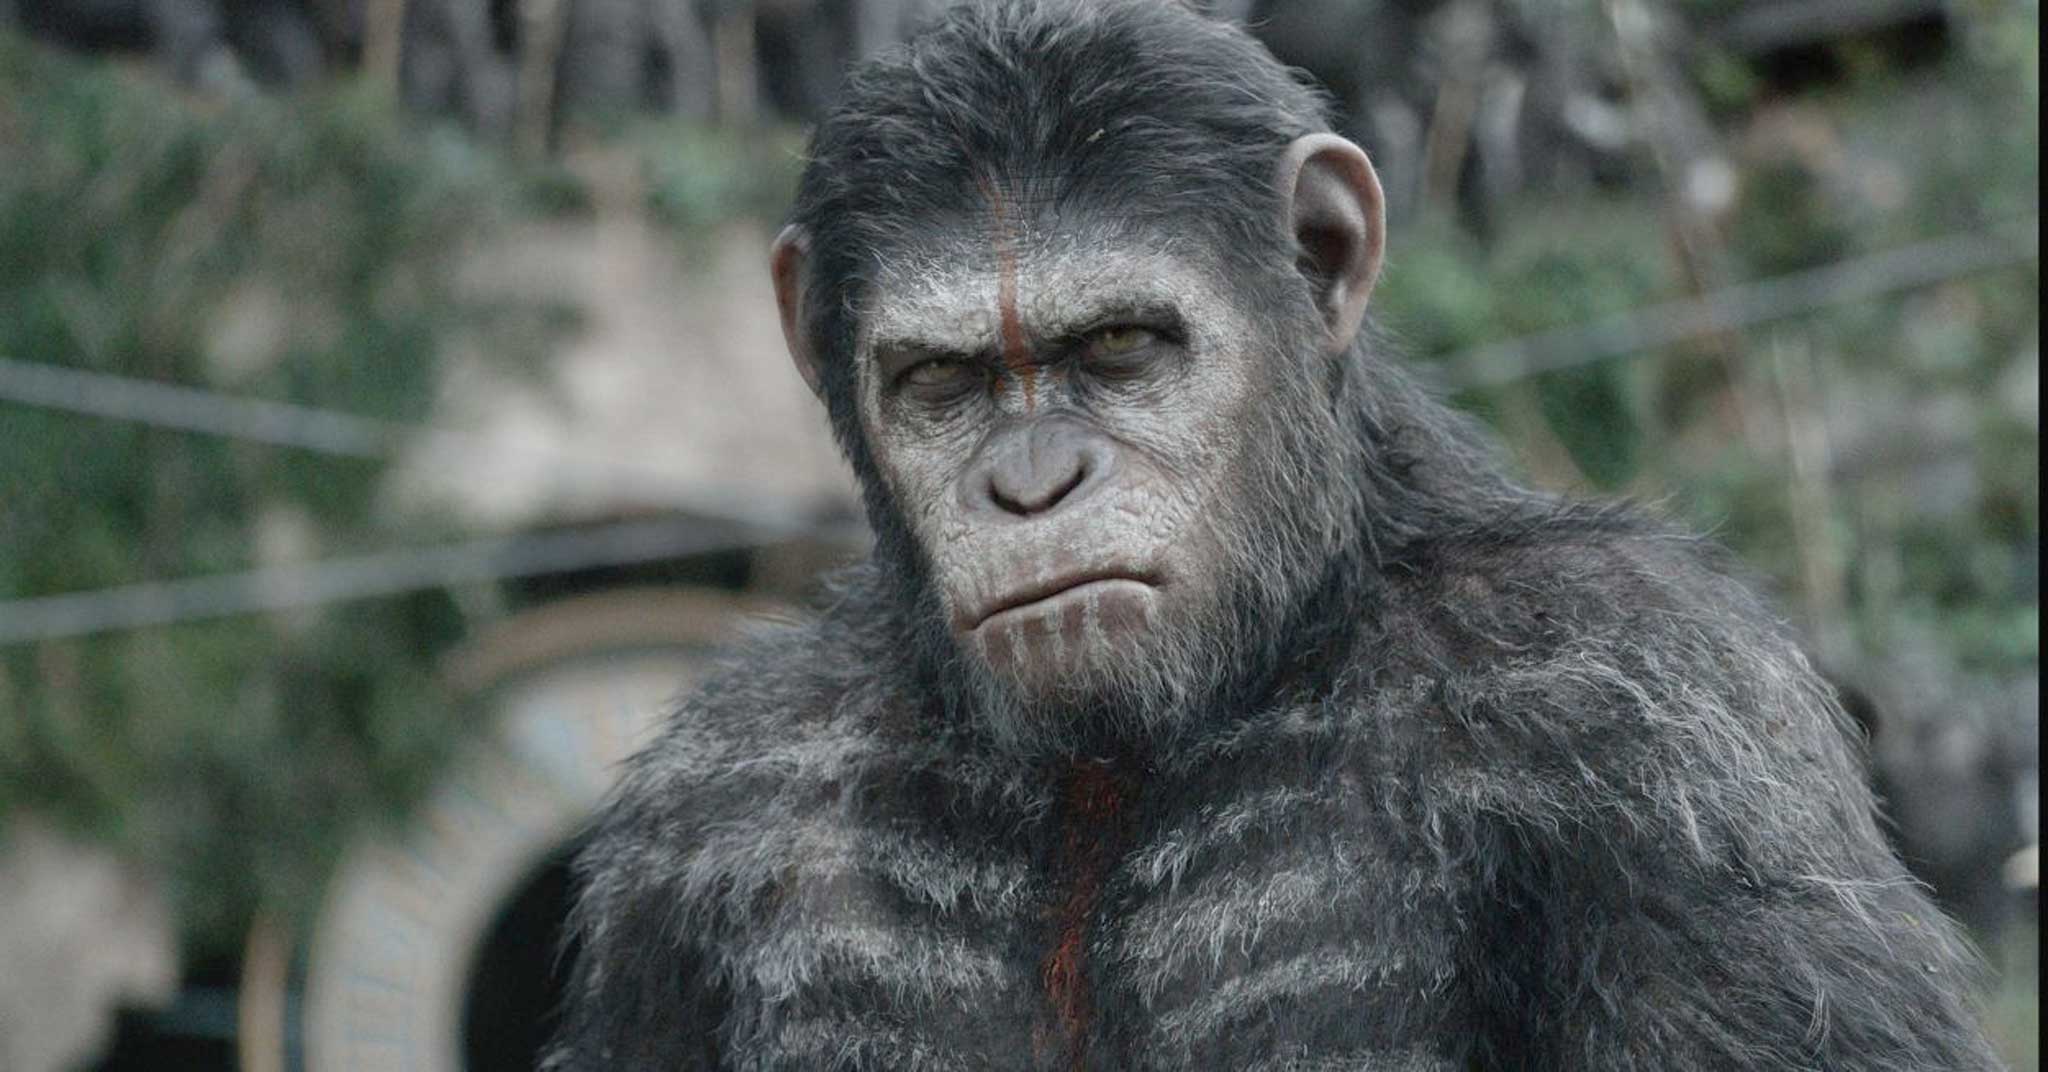 Great ape: Andy Serkis returns as Caesar